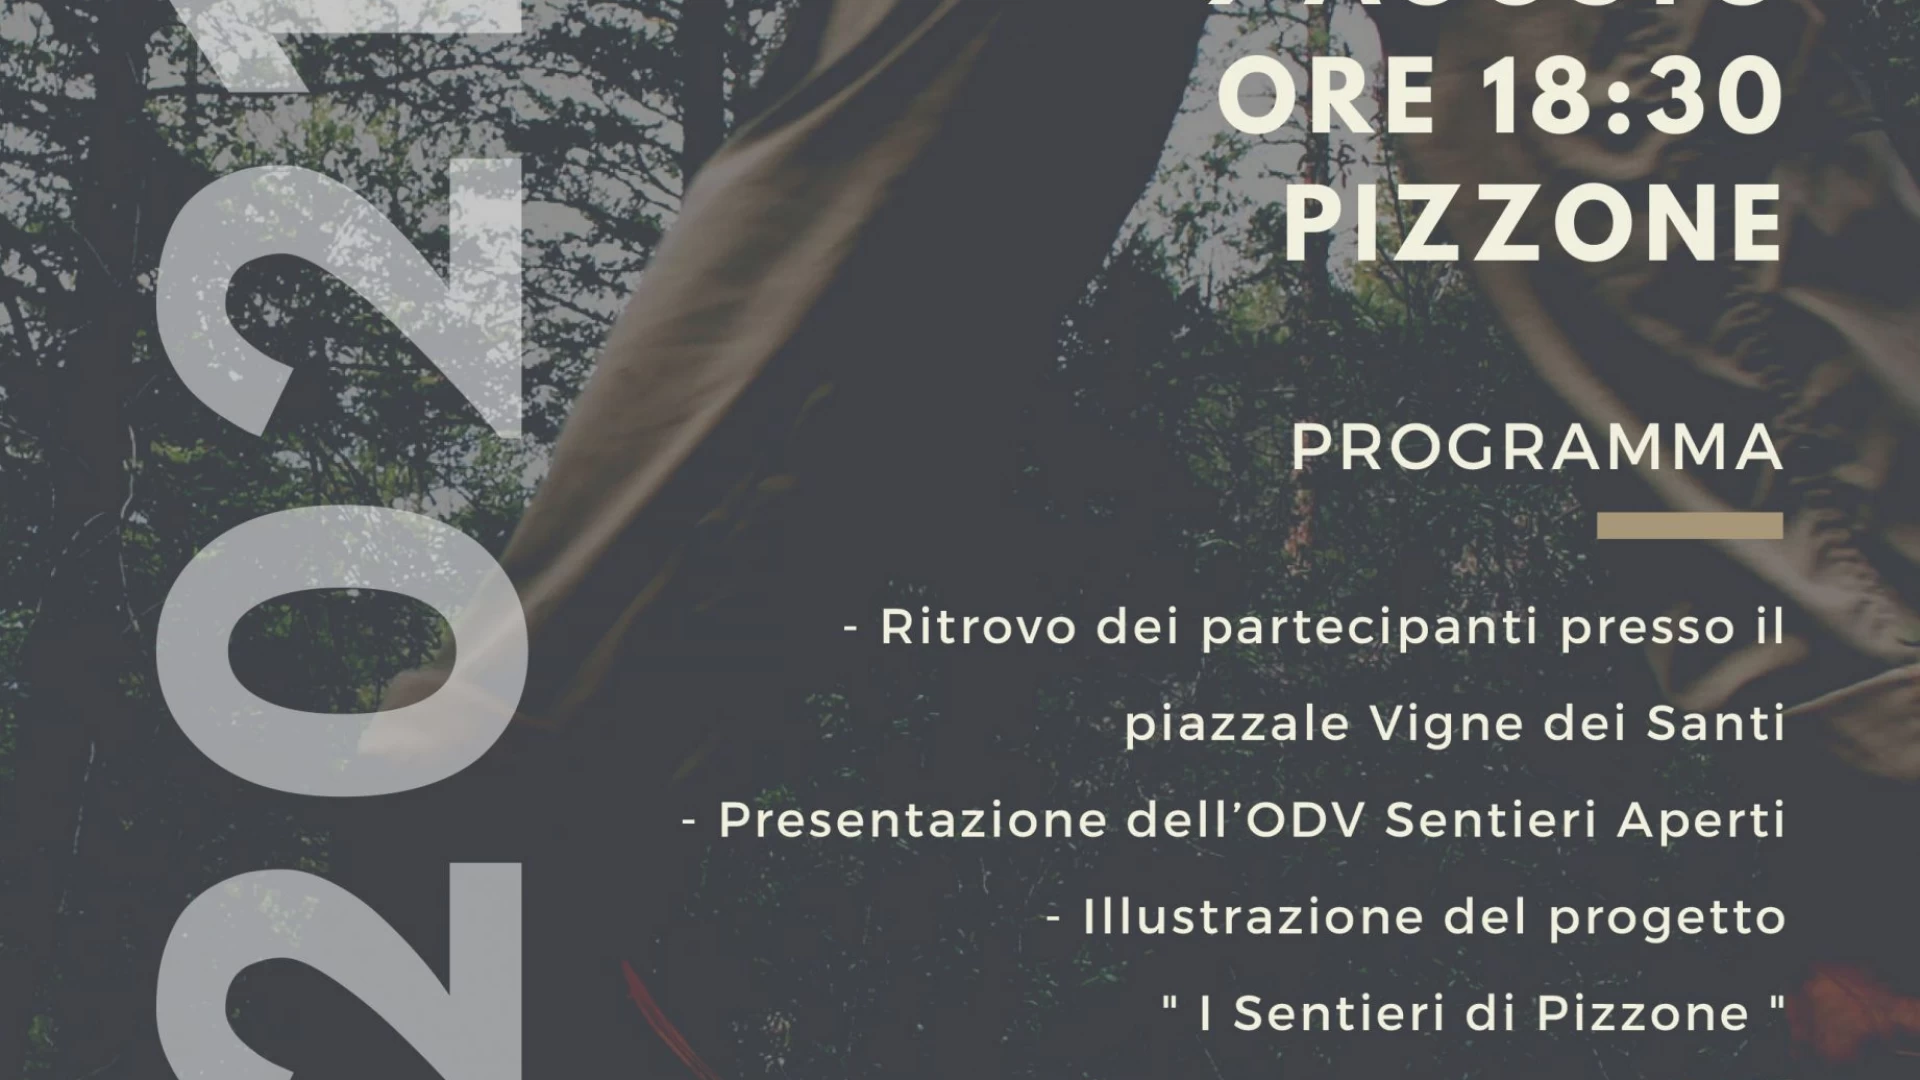 Pizzone: lunedì' 9 agosto si presenta l'associazione "Sentieri Aperti".